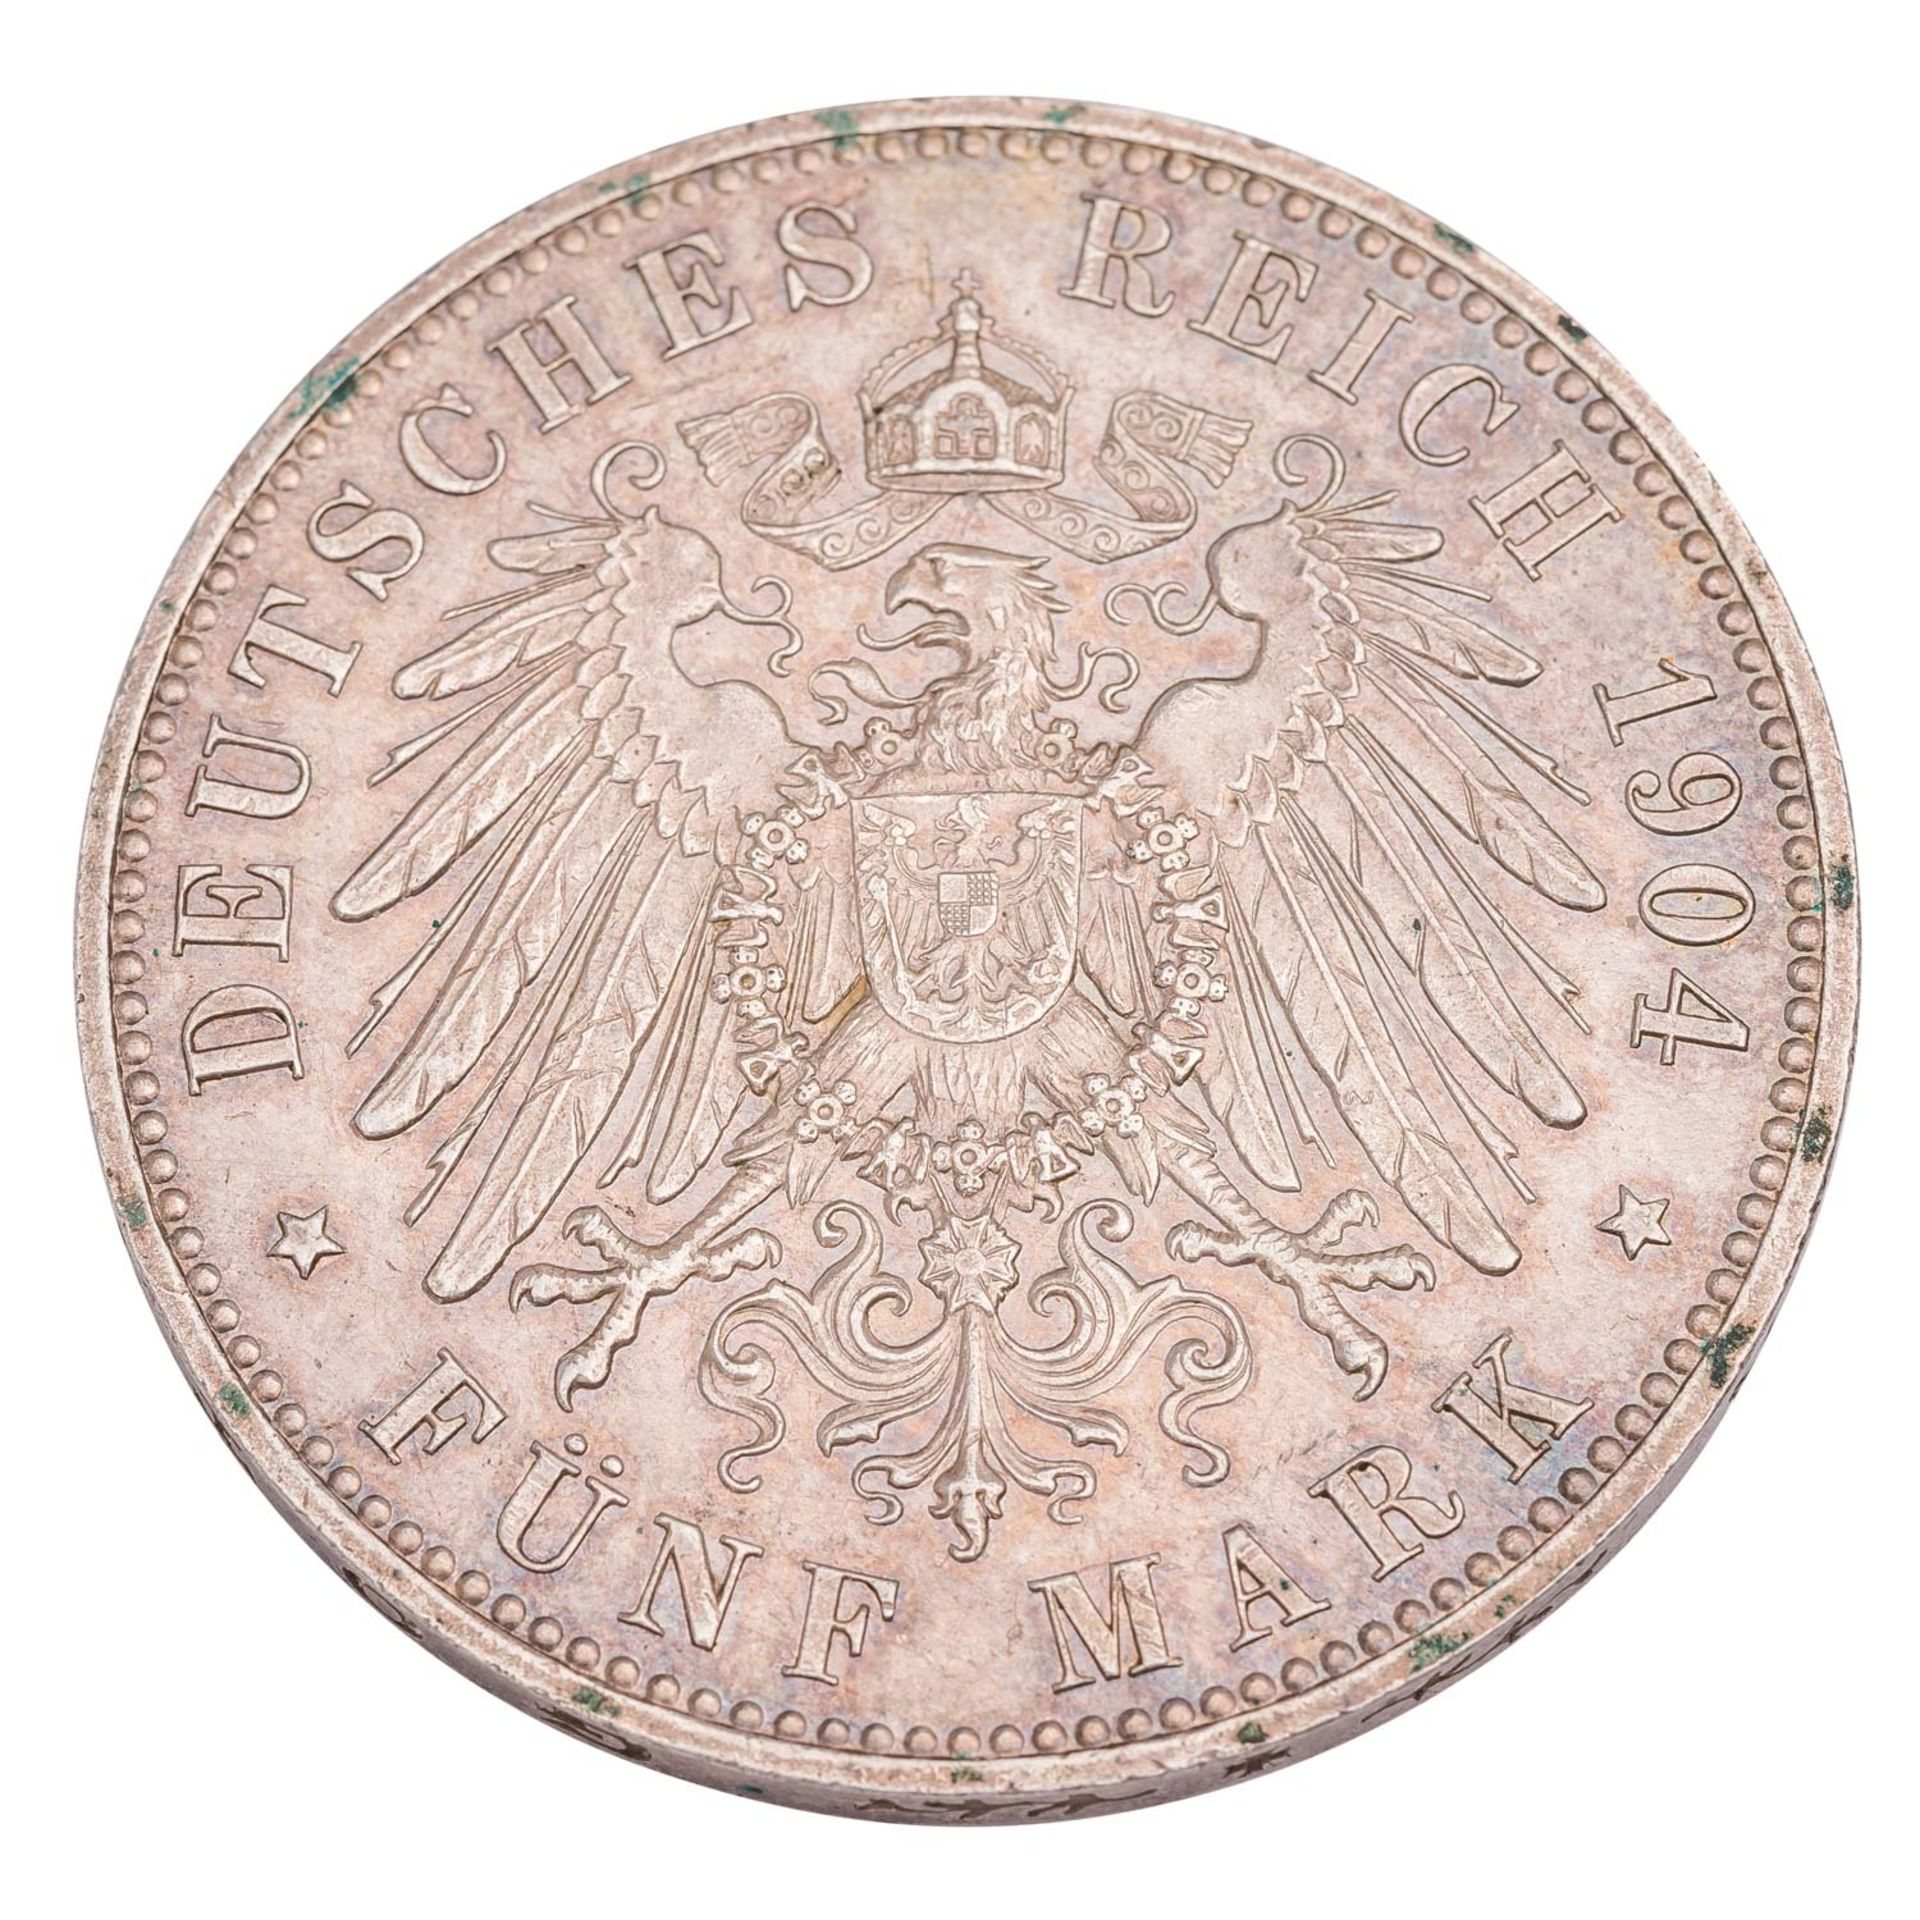 Deutsches Kaiserreich / Hansestadt Lübeck - 5 Mark 1904, - Image 2 of 2